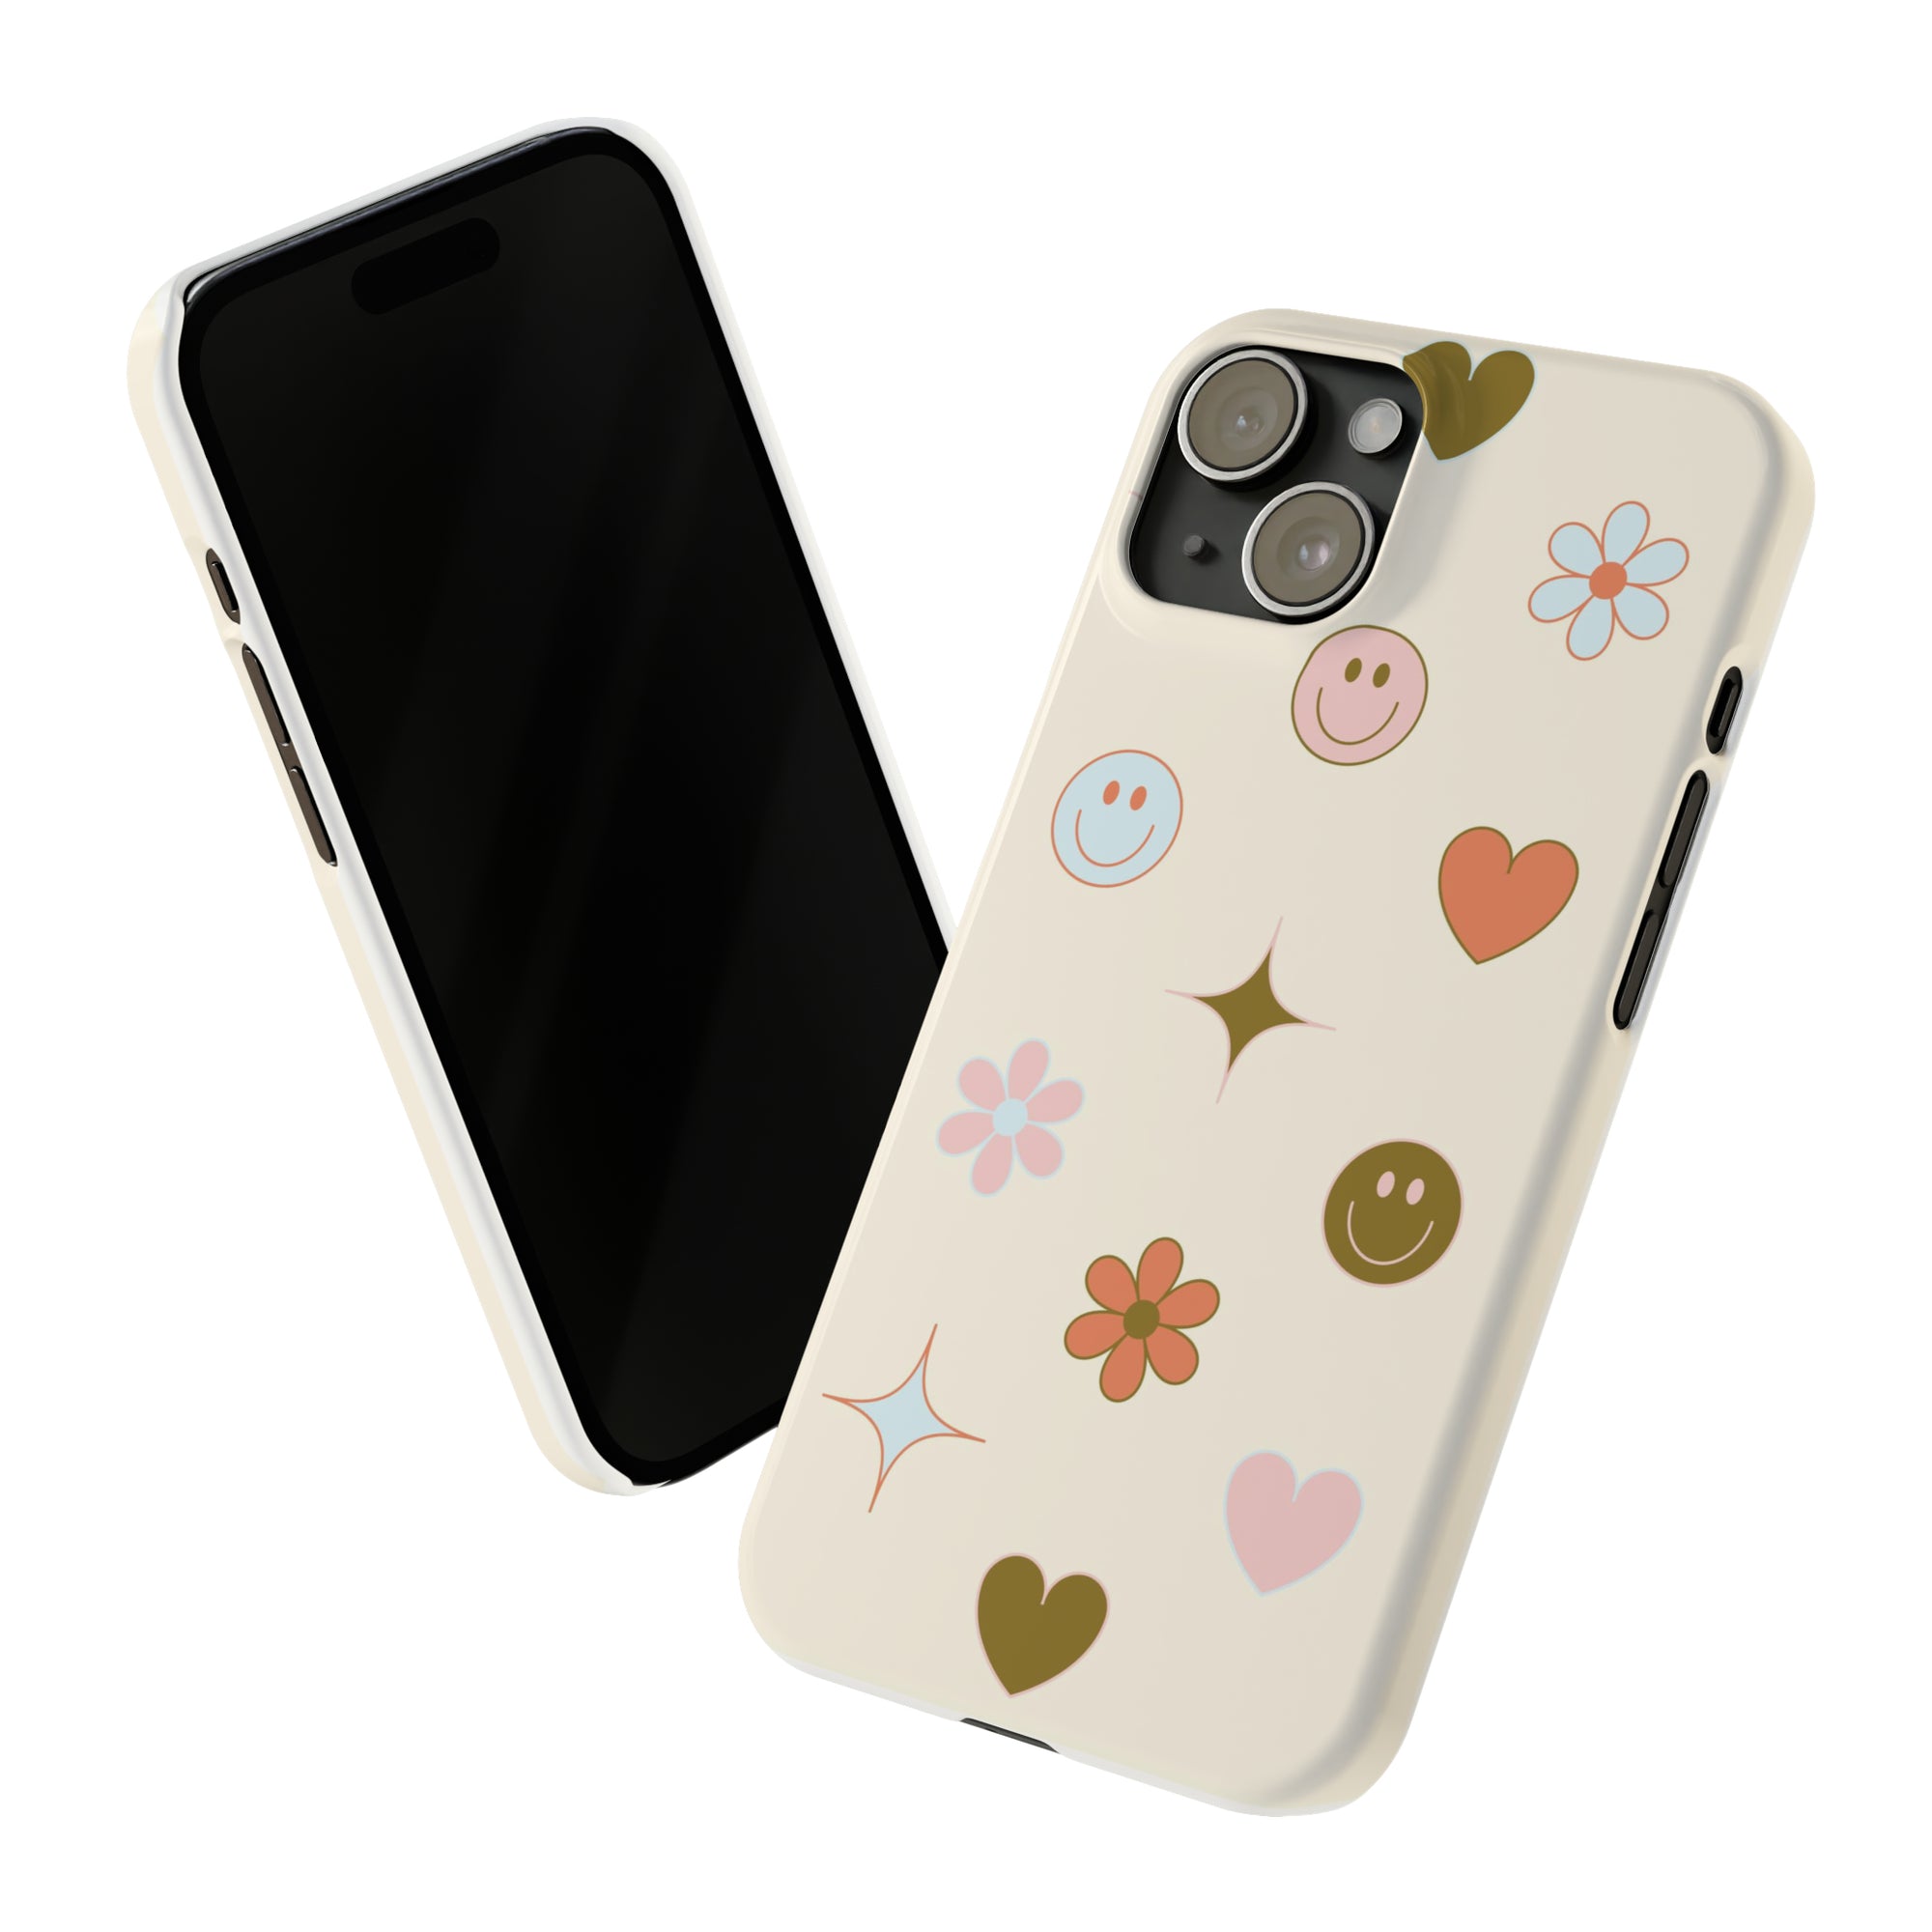 Slim Icon Phone Case in Cream